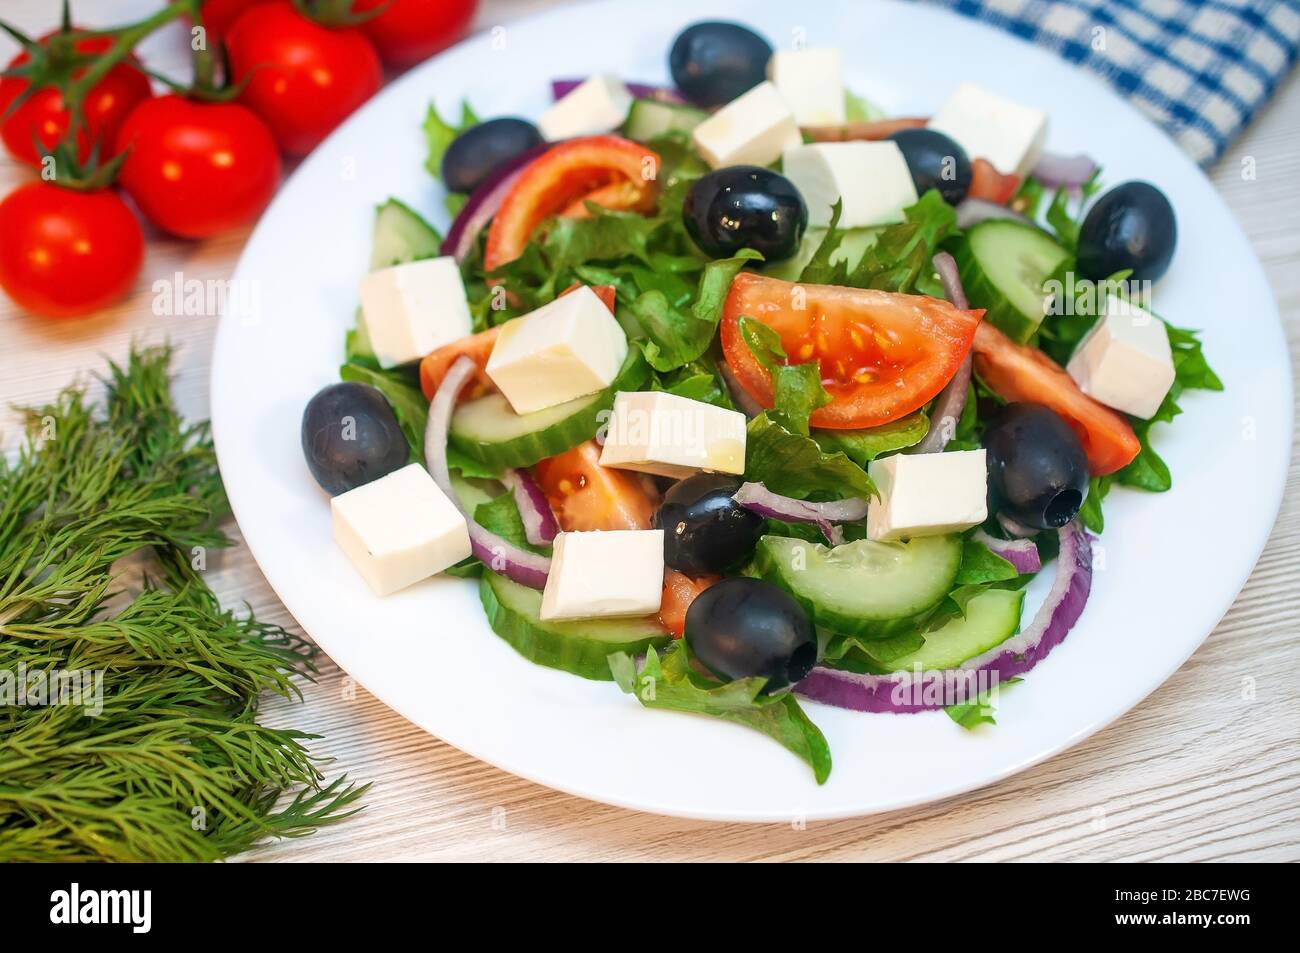 Salade grecque aux tomates, concombres et feta aux olives sur la table Banque D'Images